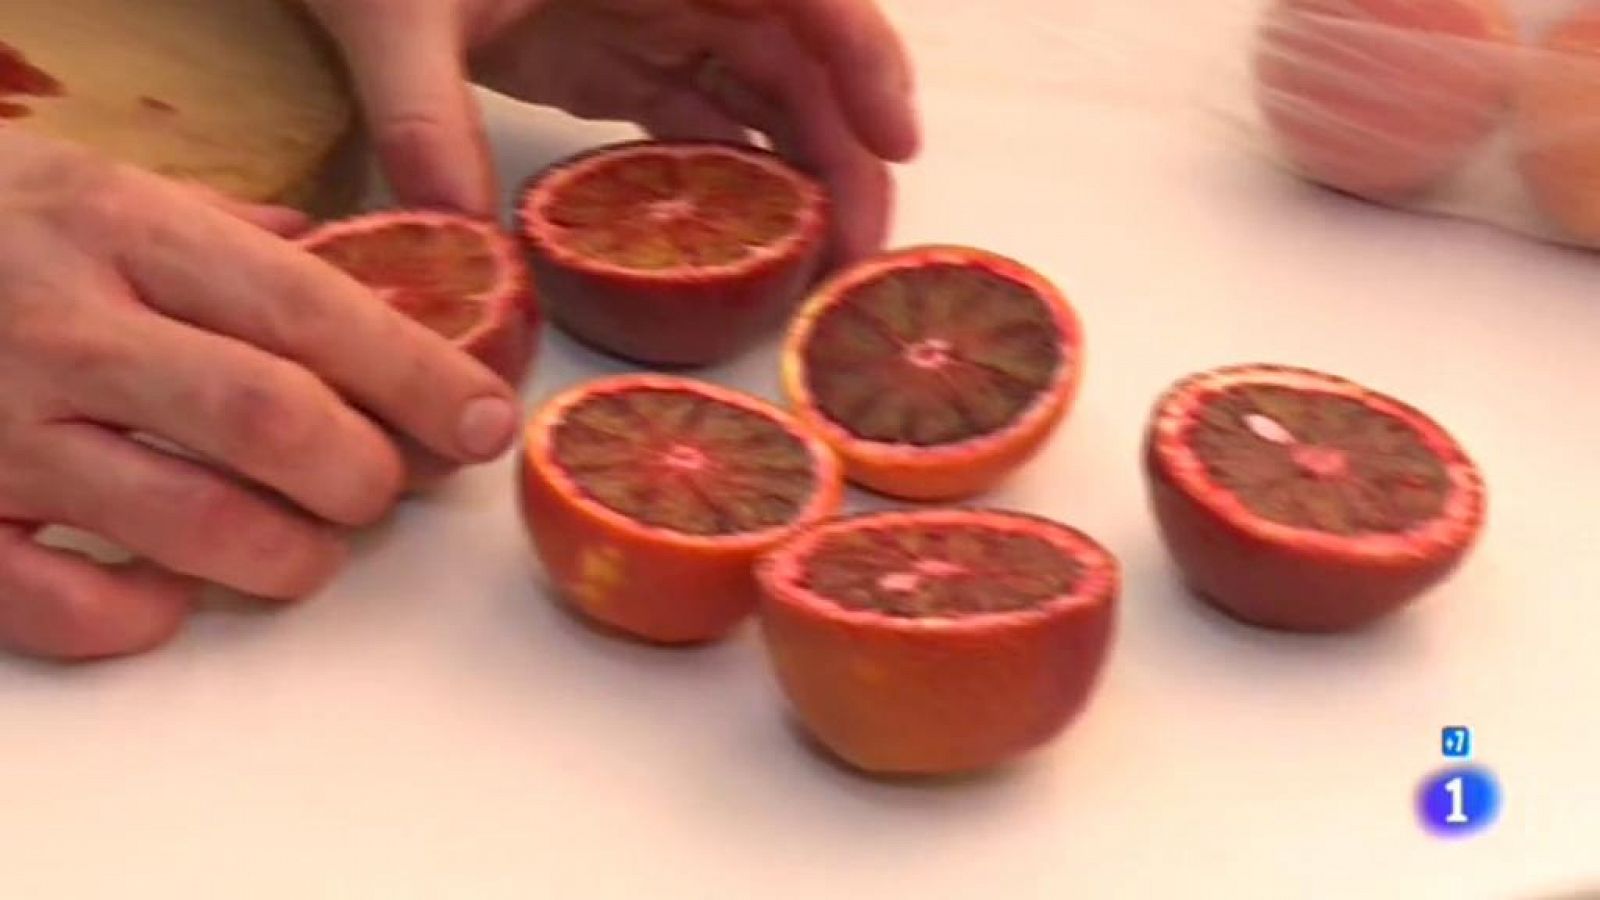 Comando Actualidad - "Alimentos anti" - La naranja sanguina, ¿un nuevo antioxidante?